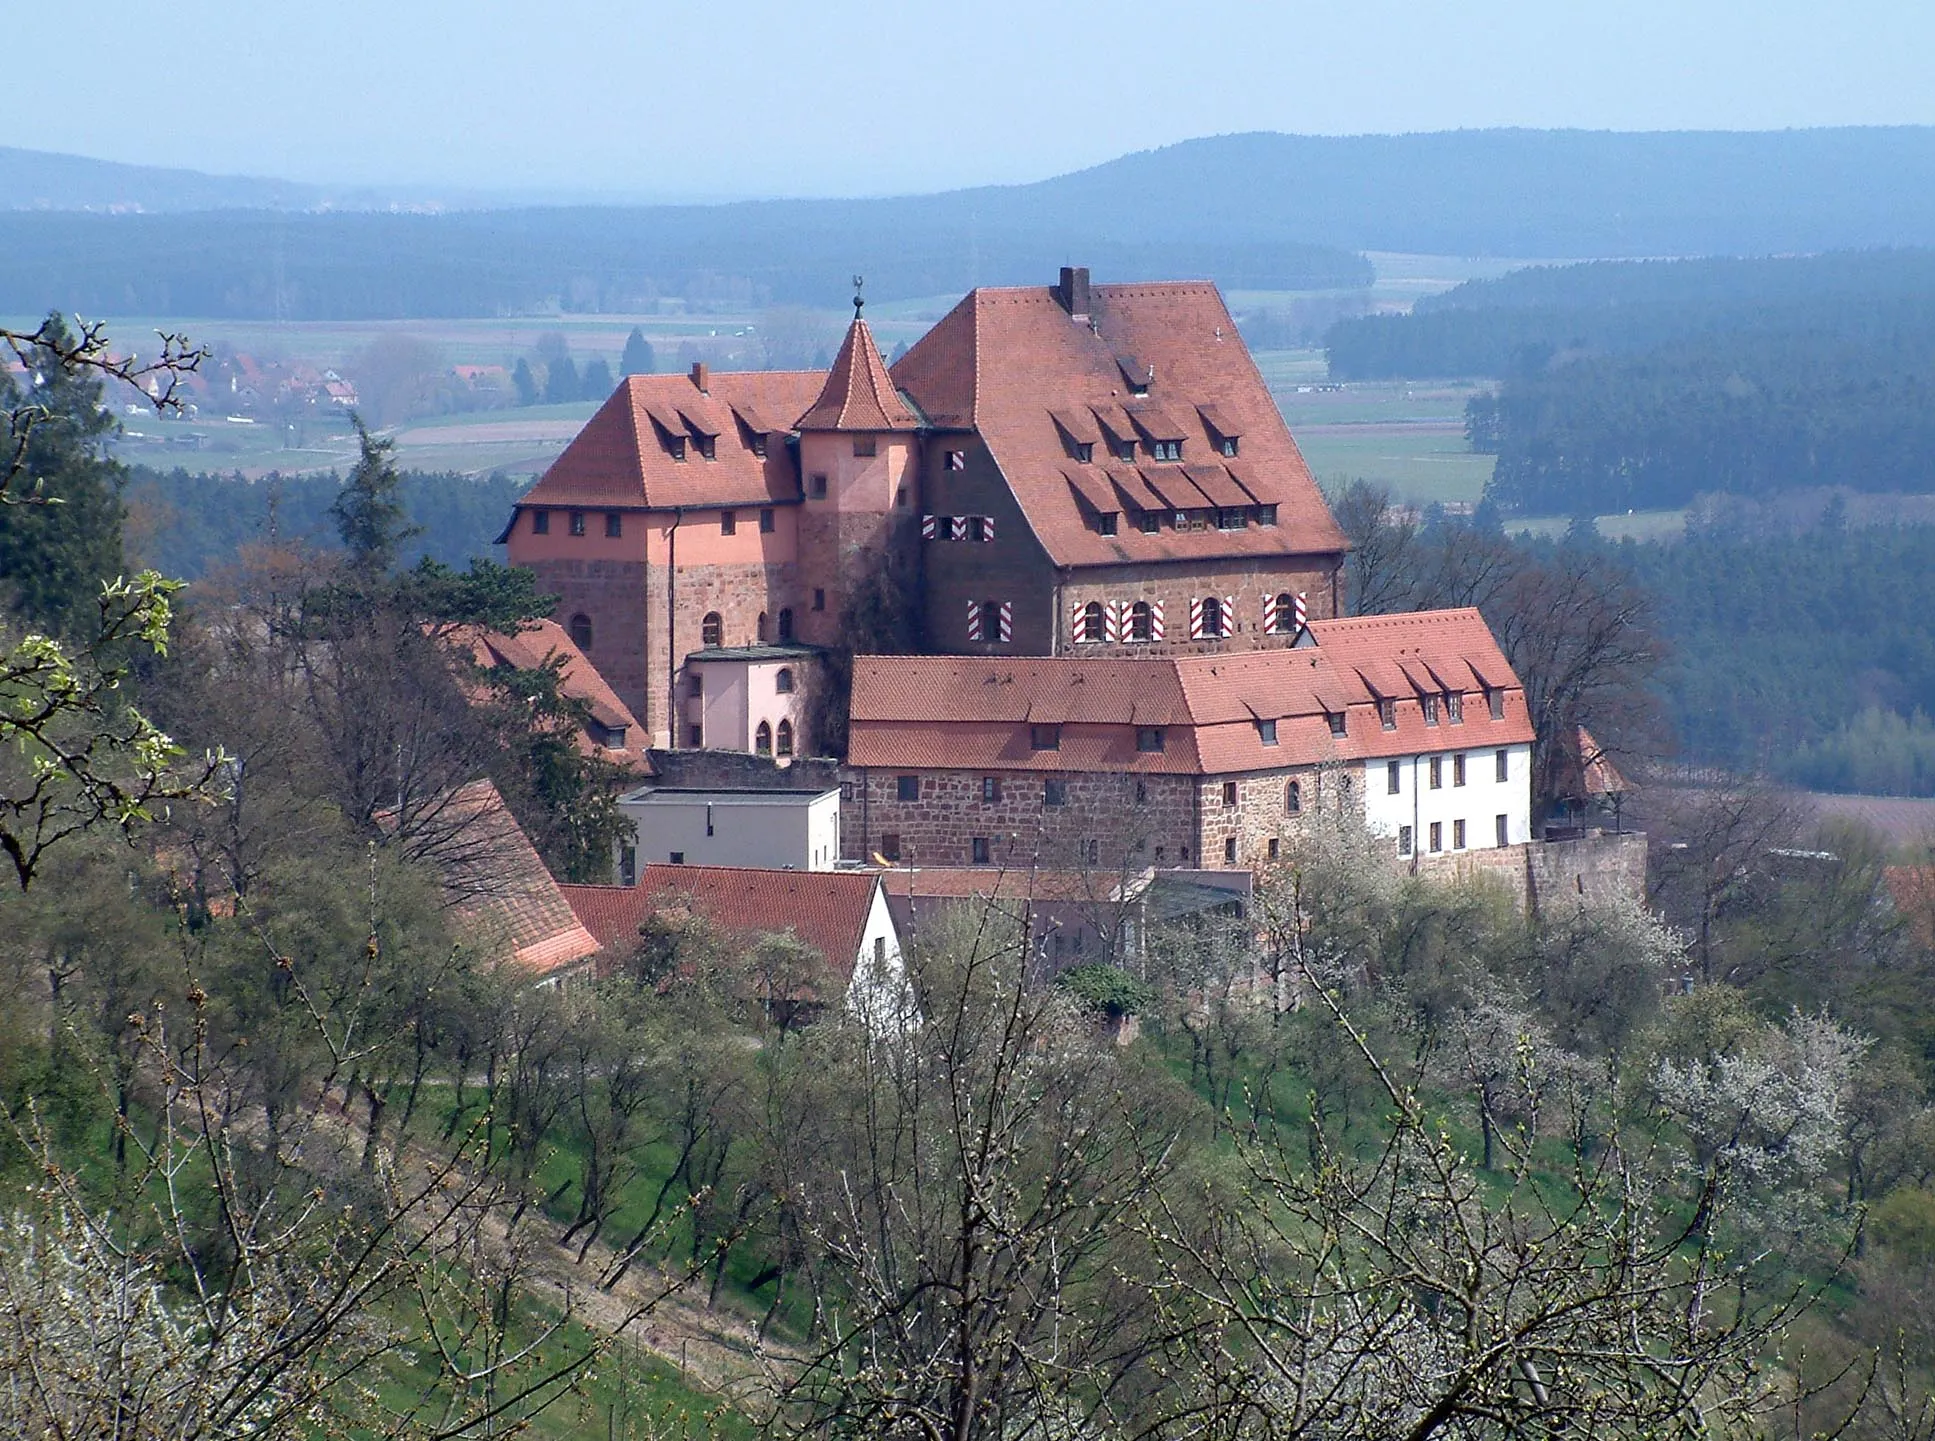 Photo showing: Burg Wernfels von Thailenberg aus gesehen
The Castle Wernfels near the town Spalt in Frankonia, Germany, seen from the village Thailenberg.